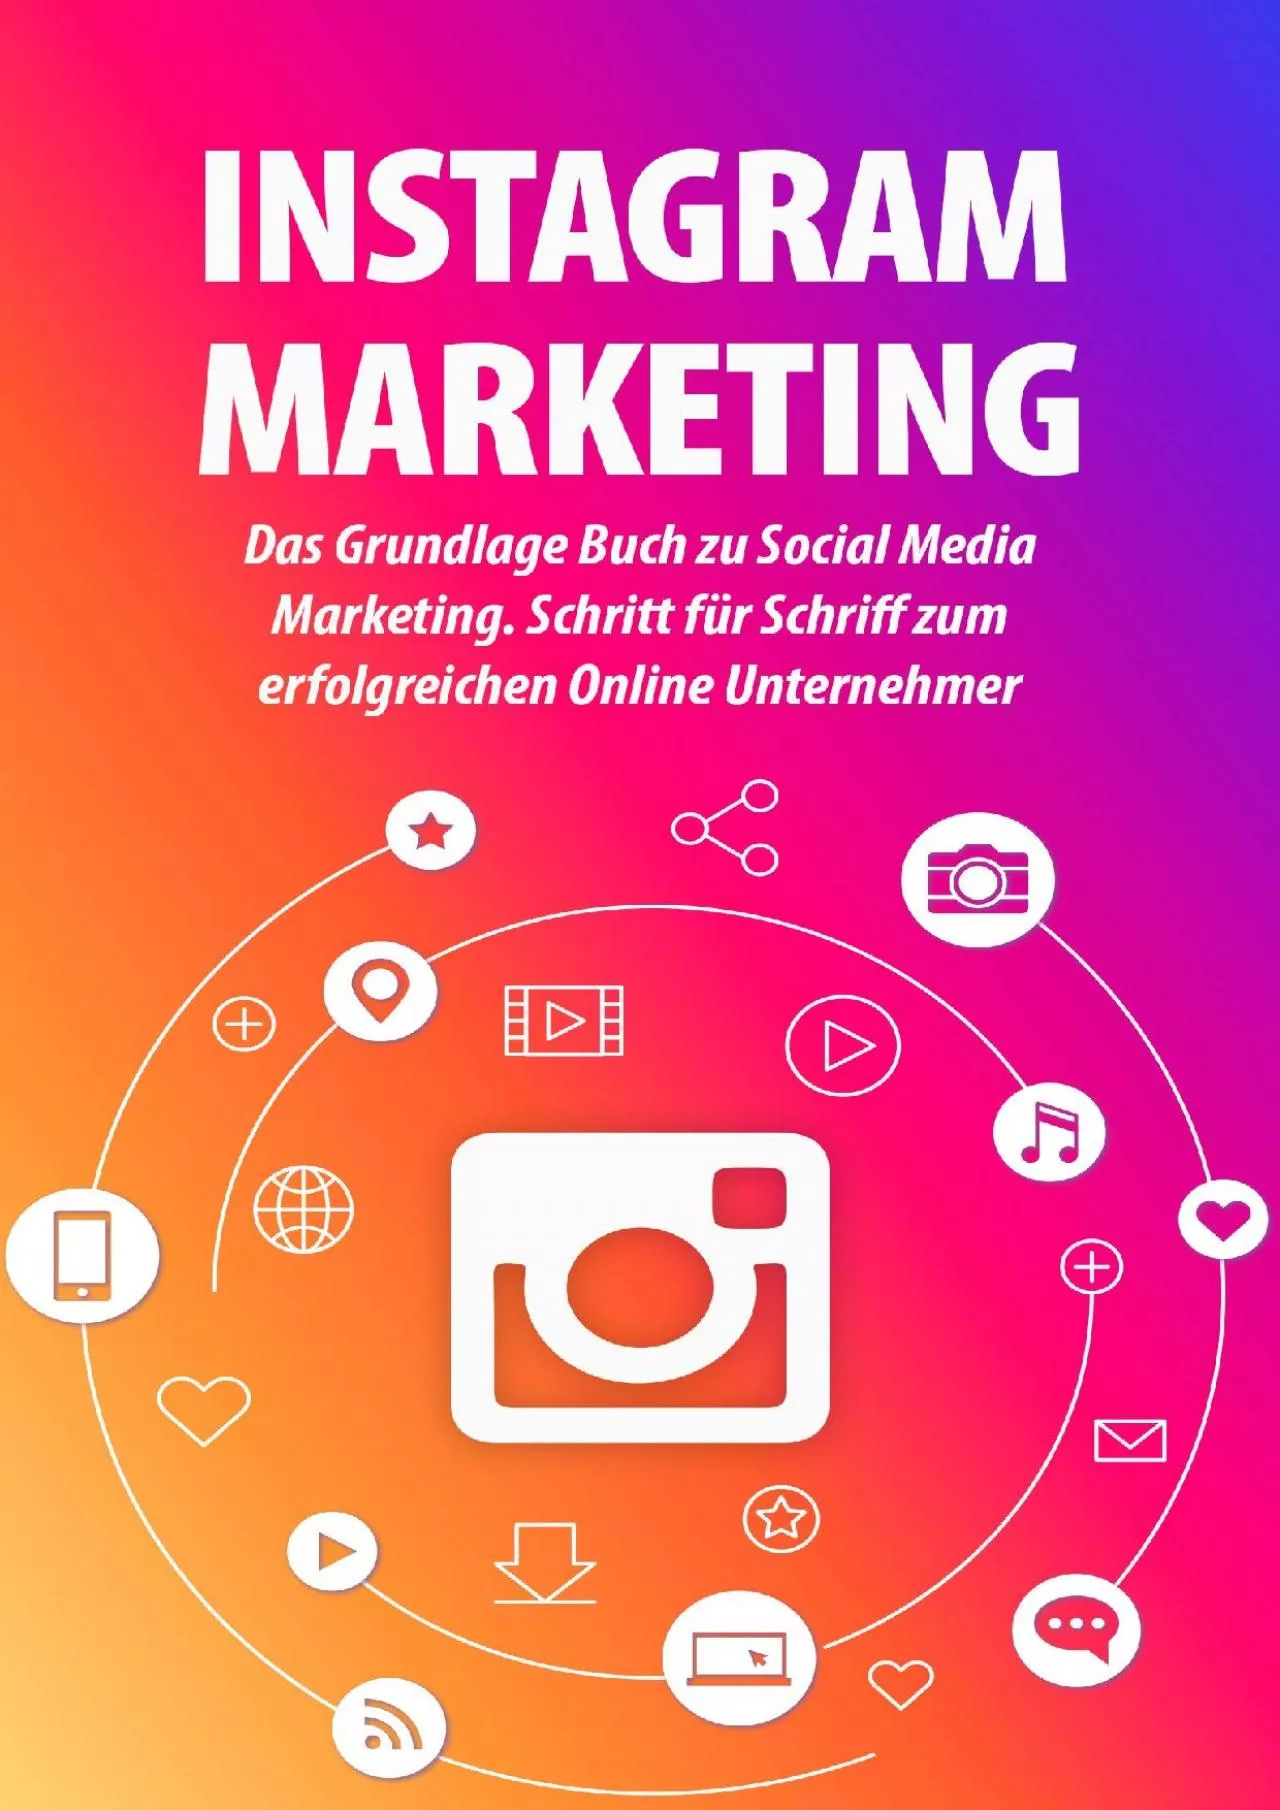 INSTAGRAM MARKETING: Das Grundlage Buch zu Social Media Marketing. Schritt für Schriff